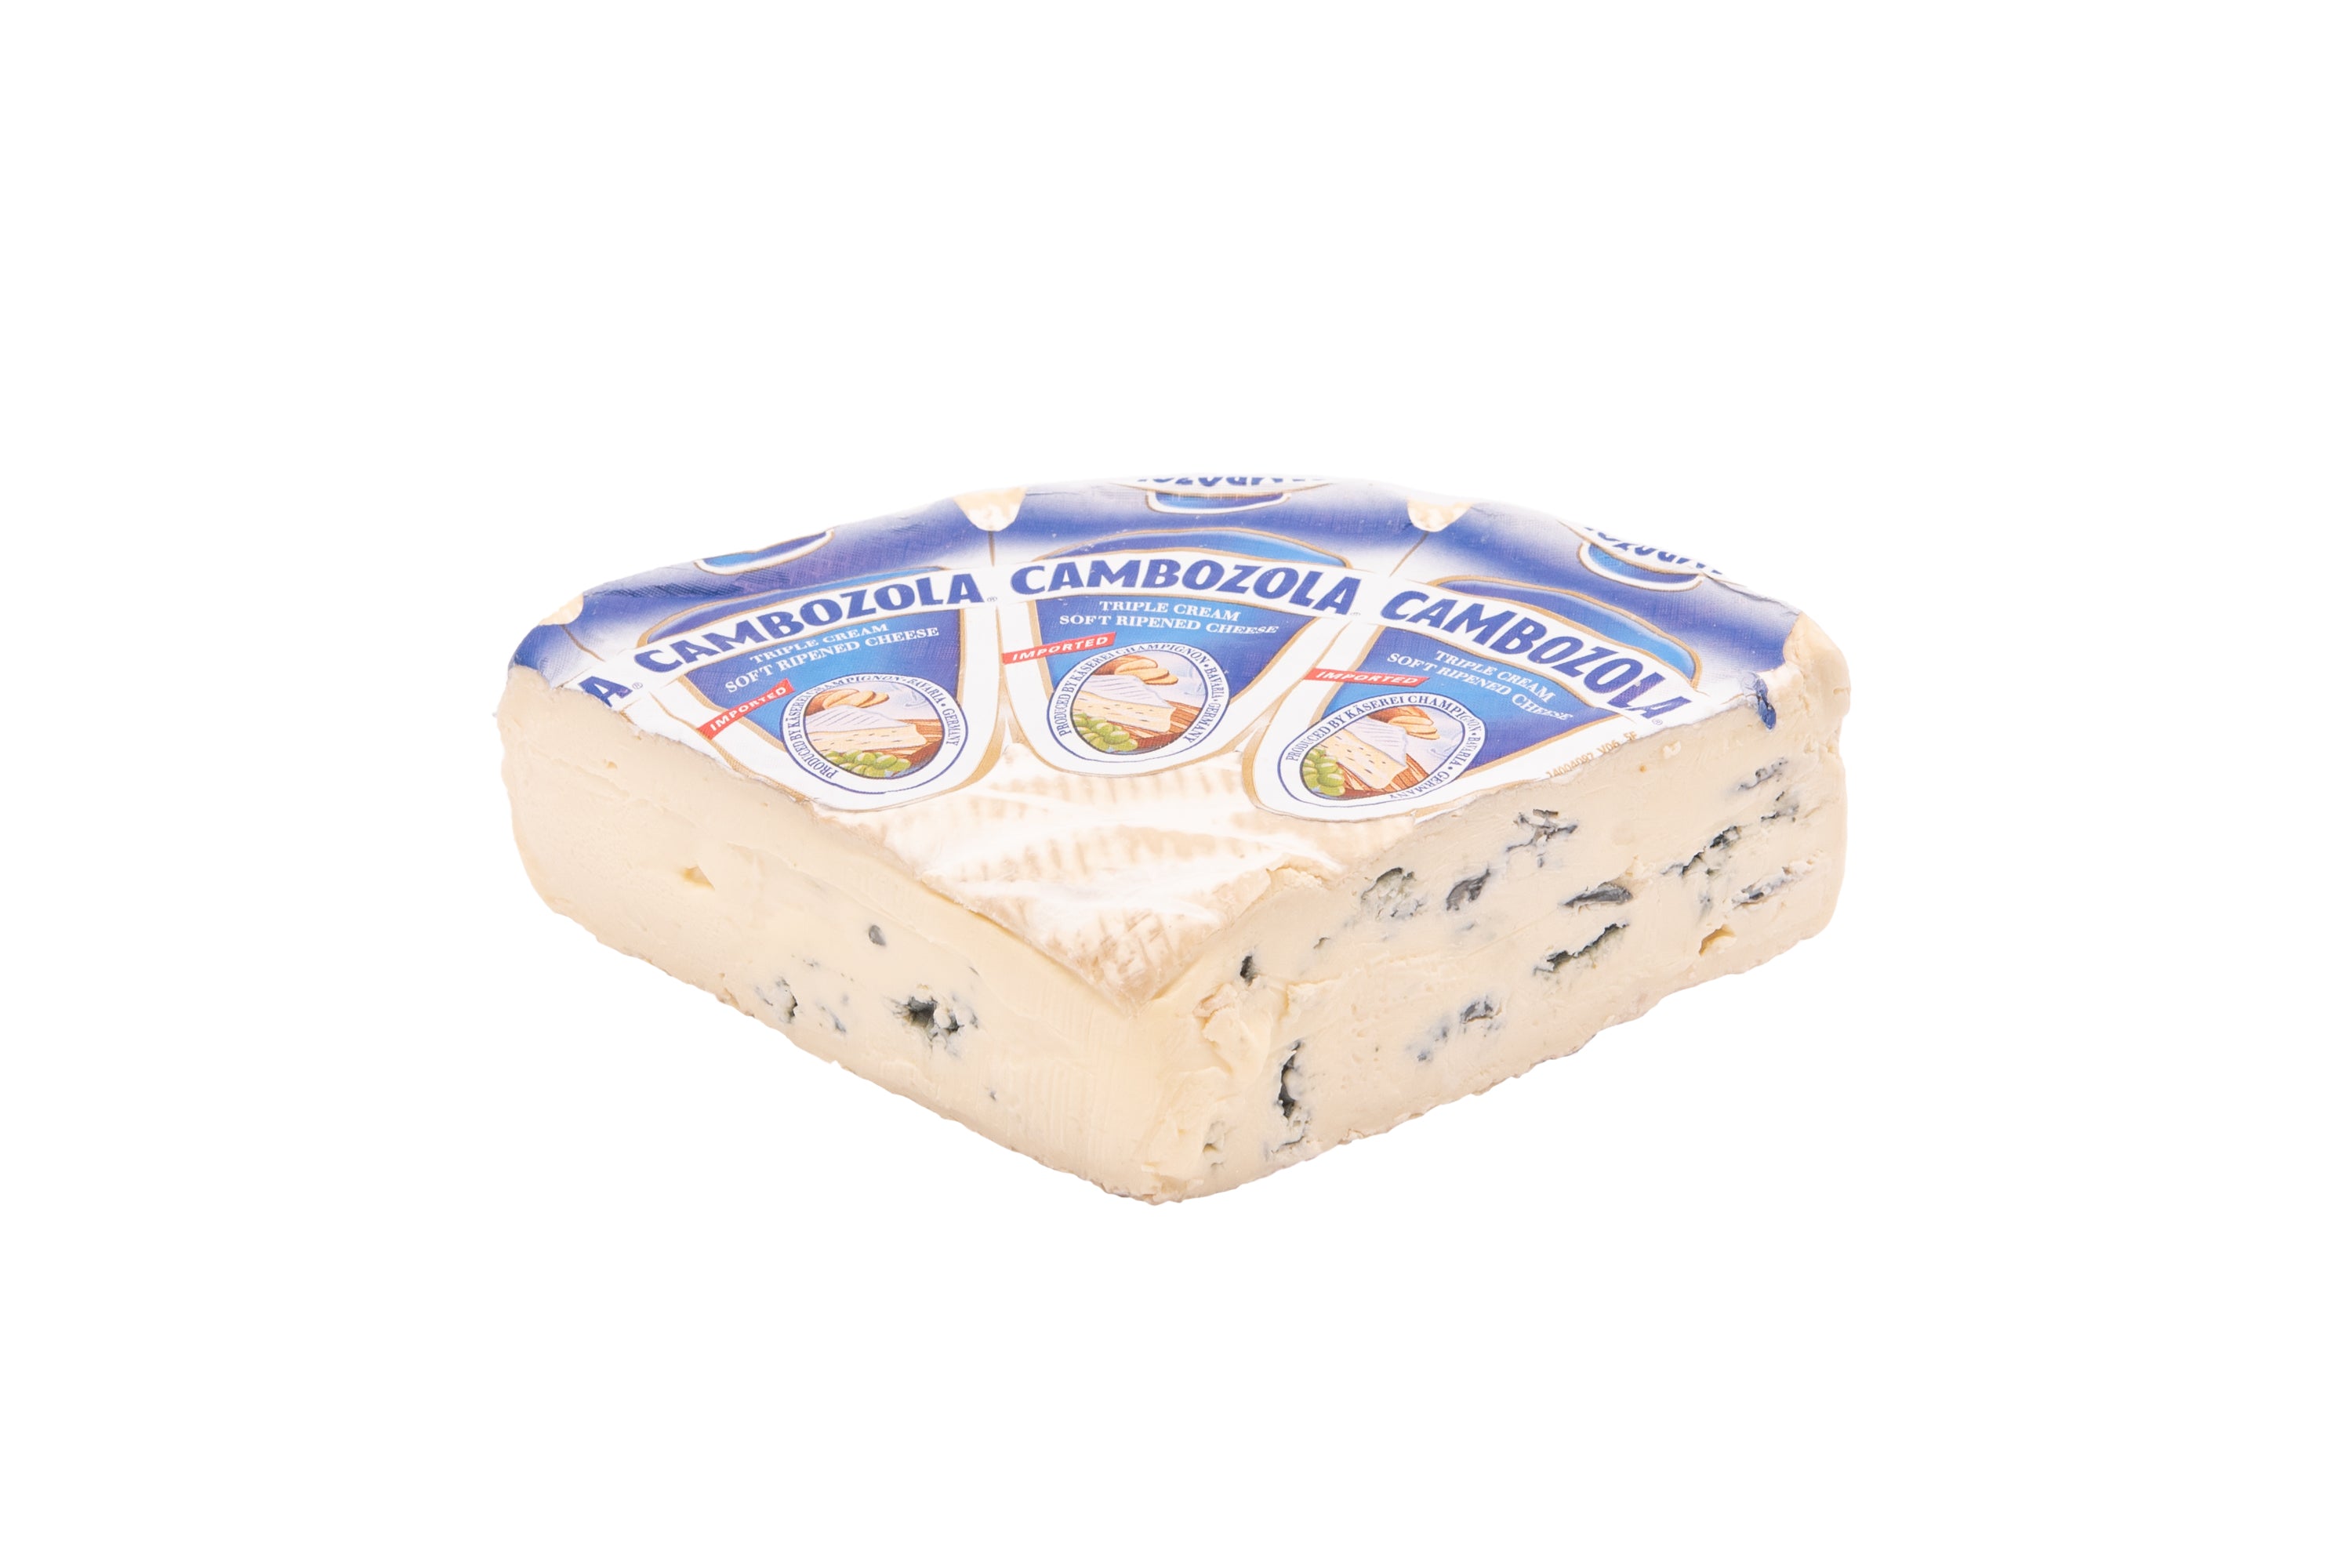 Cheese - Cambozola 8 oz